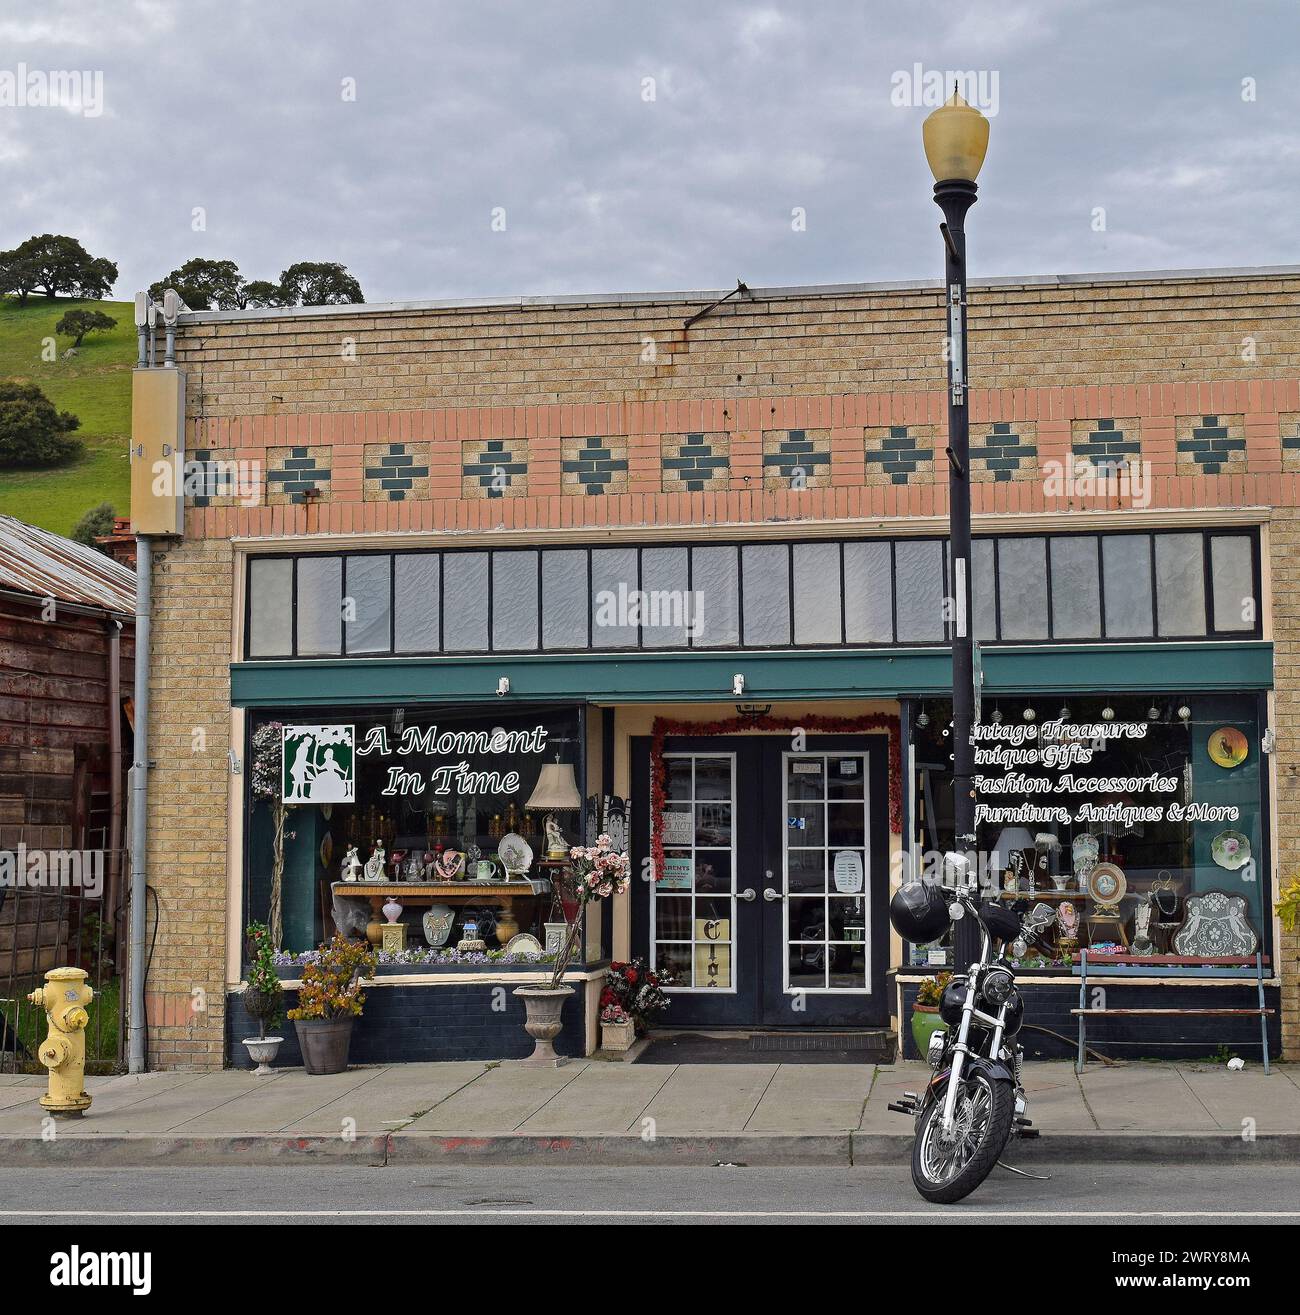 Motocicleta estacionada en Niles Blvd, Una tienda de antigüedades Moment in Time en el distrito de Niles de Fremont, California, Foto de stock